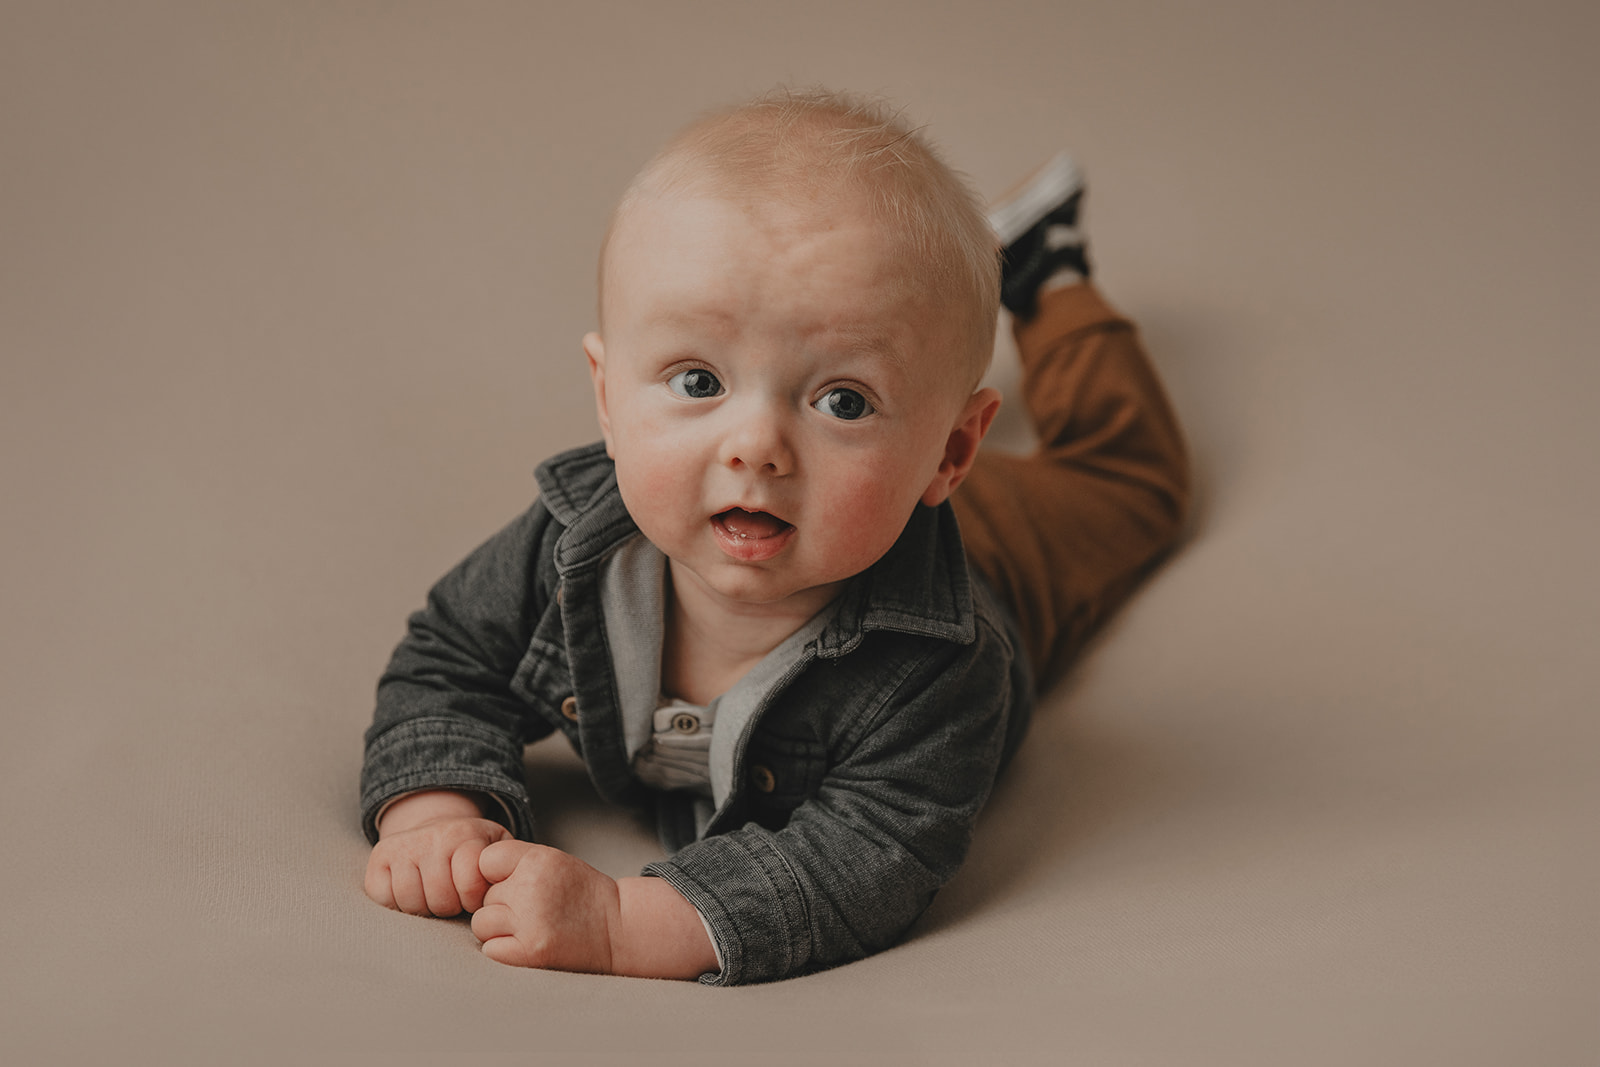 babyfotoshoot gelderland studio heerde zwolle apeldoorn warm boho spontaan baby fotografie